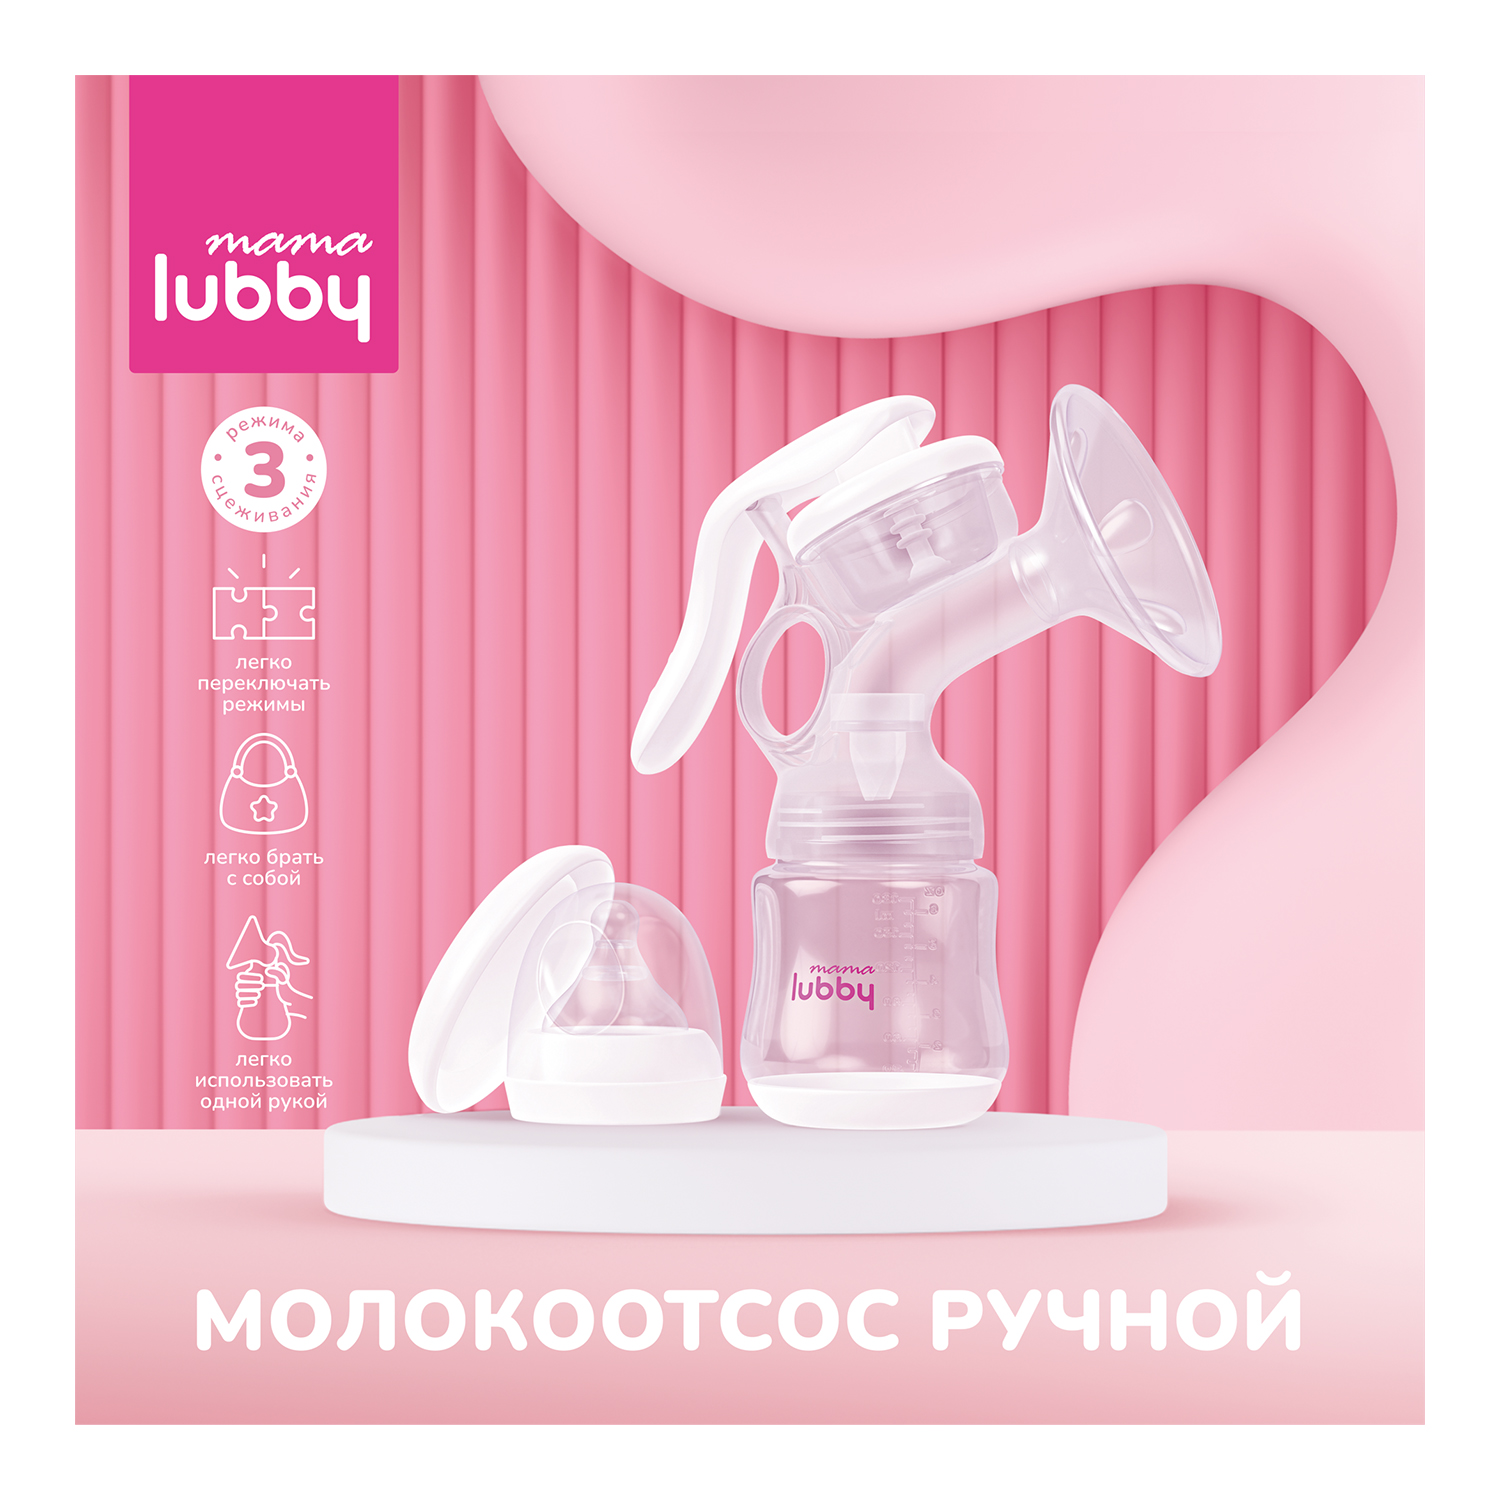 Молокоотсос ручной mama lubby, 3 режима, с аксессуарами молокоотсос электронный портативный mama lubby с бутылочкой 0